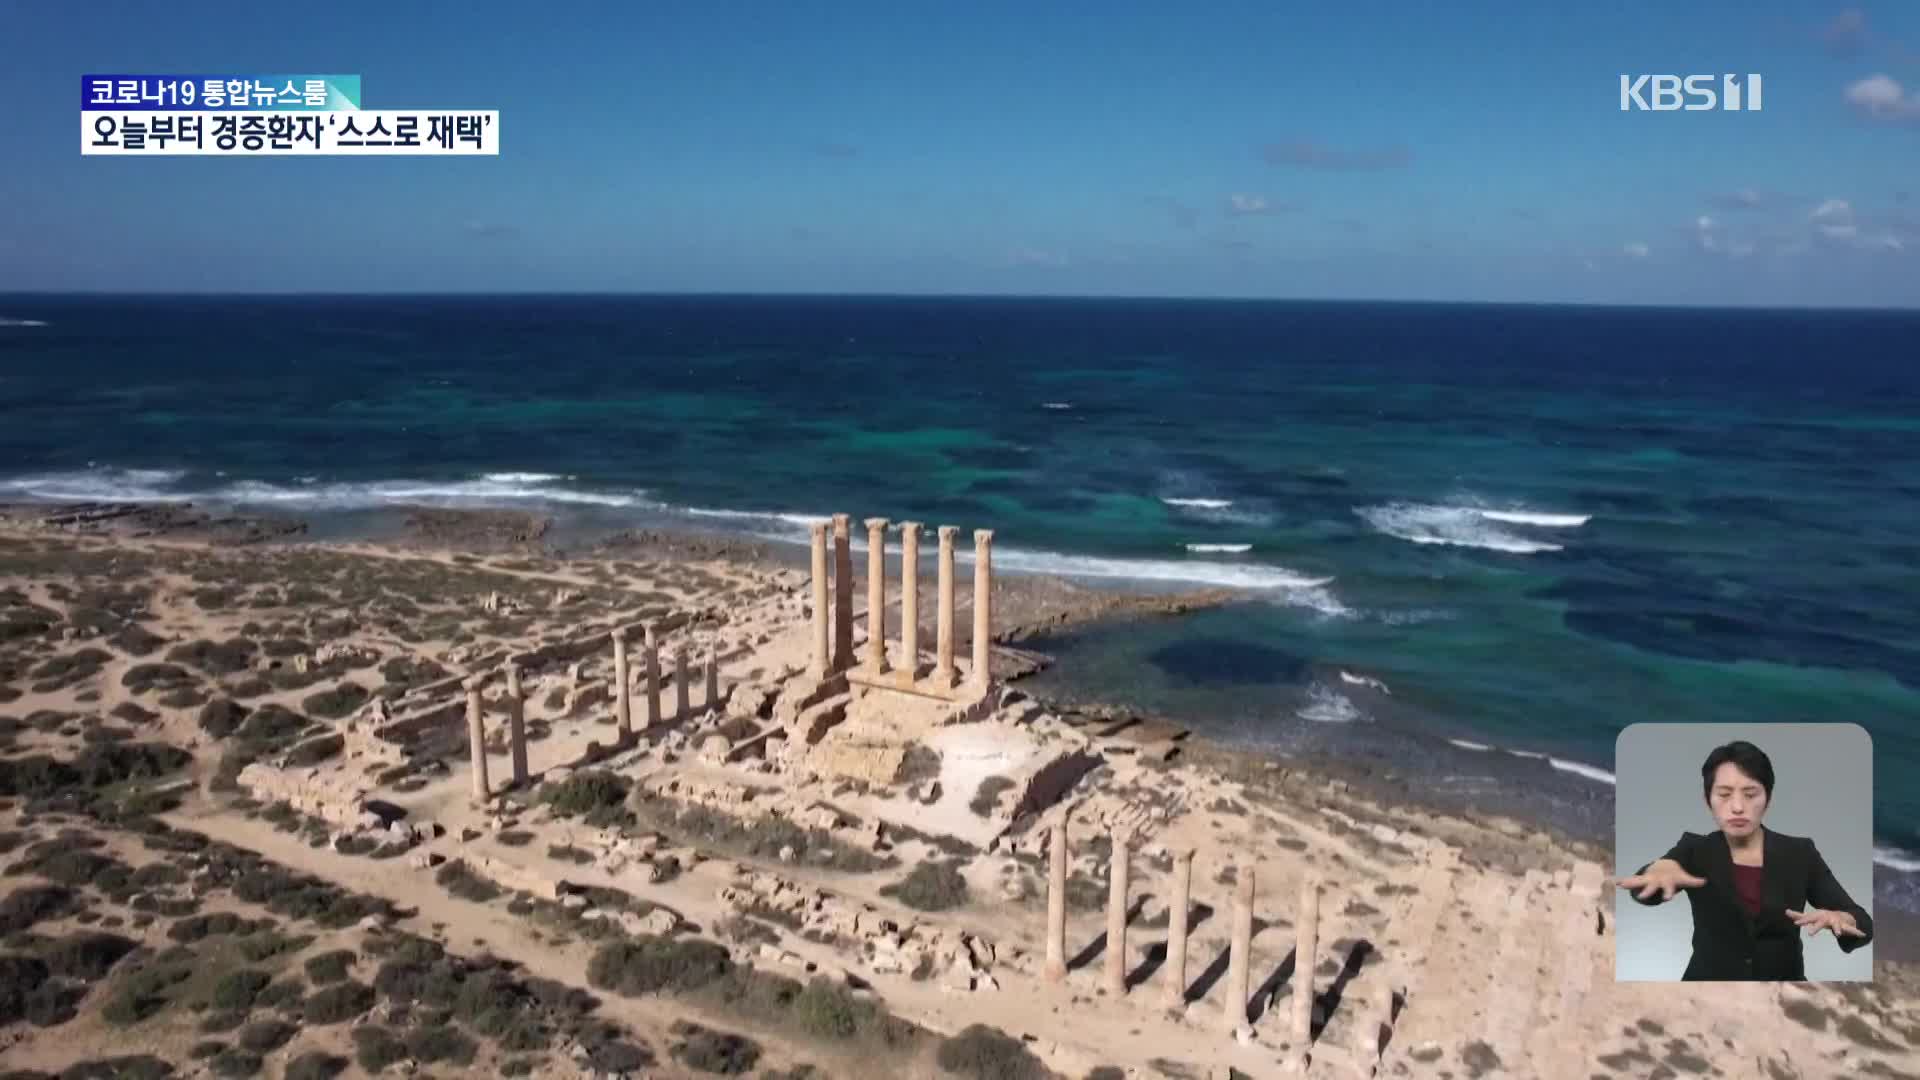 리비아, 사브라타 로마 시대 유적지 사라질 위기